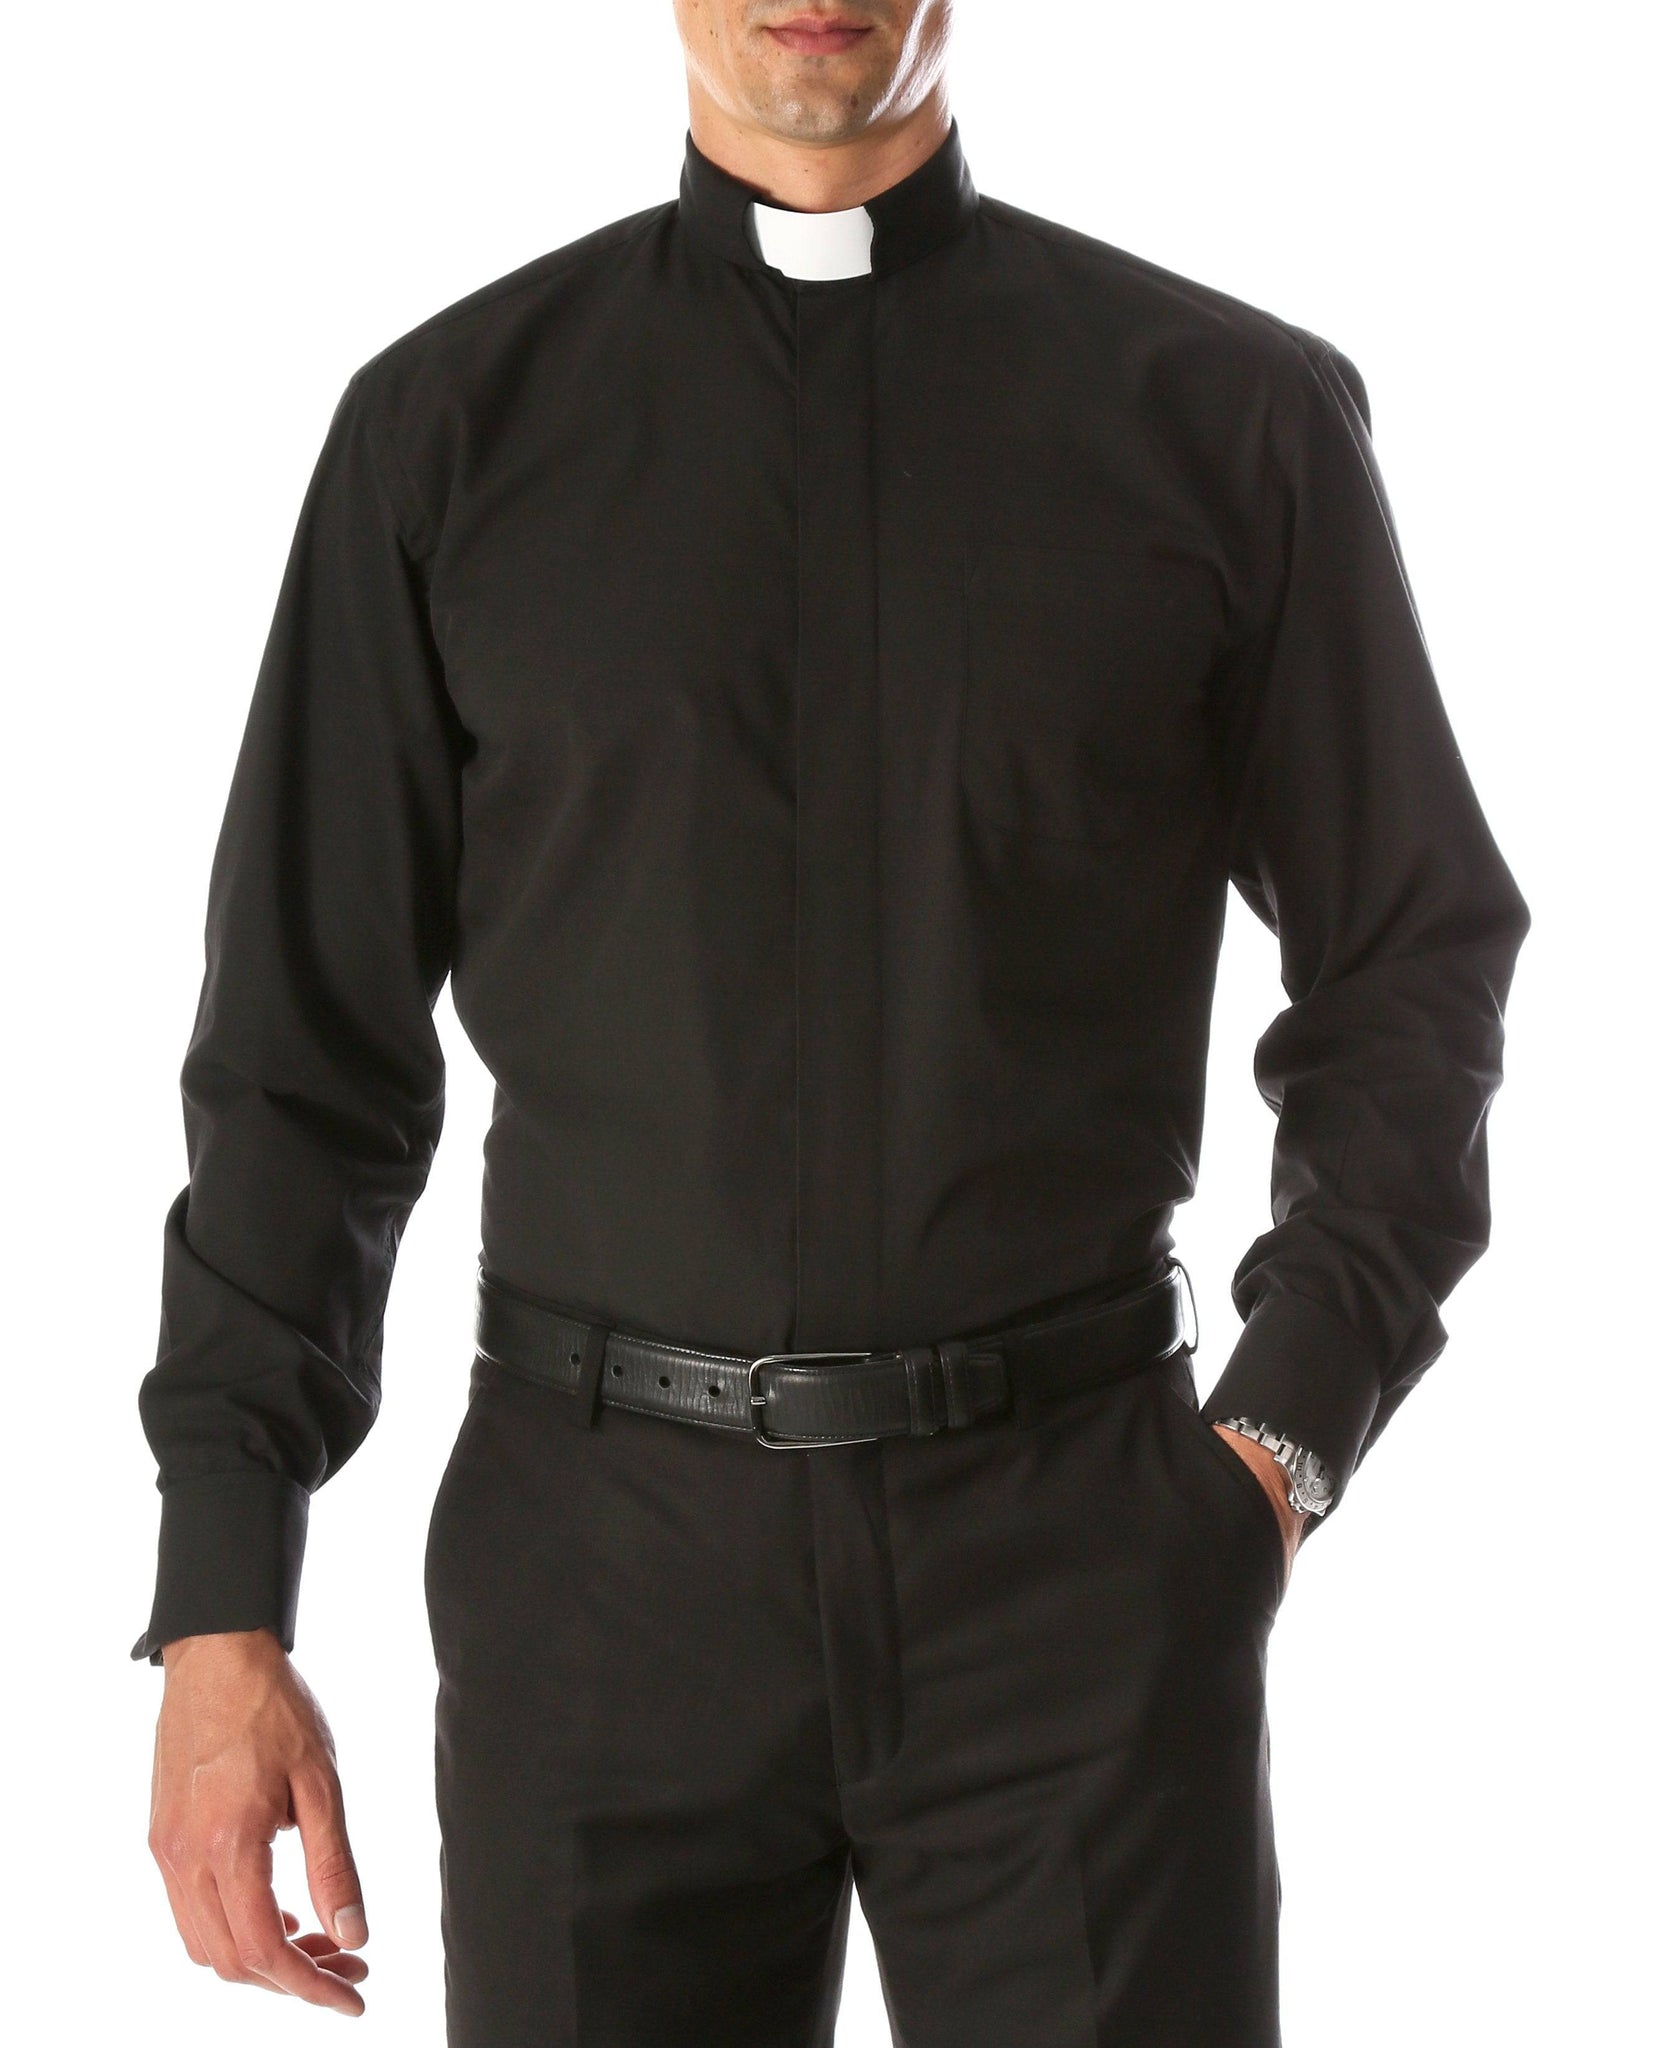 Men's Black Clergy Shirt